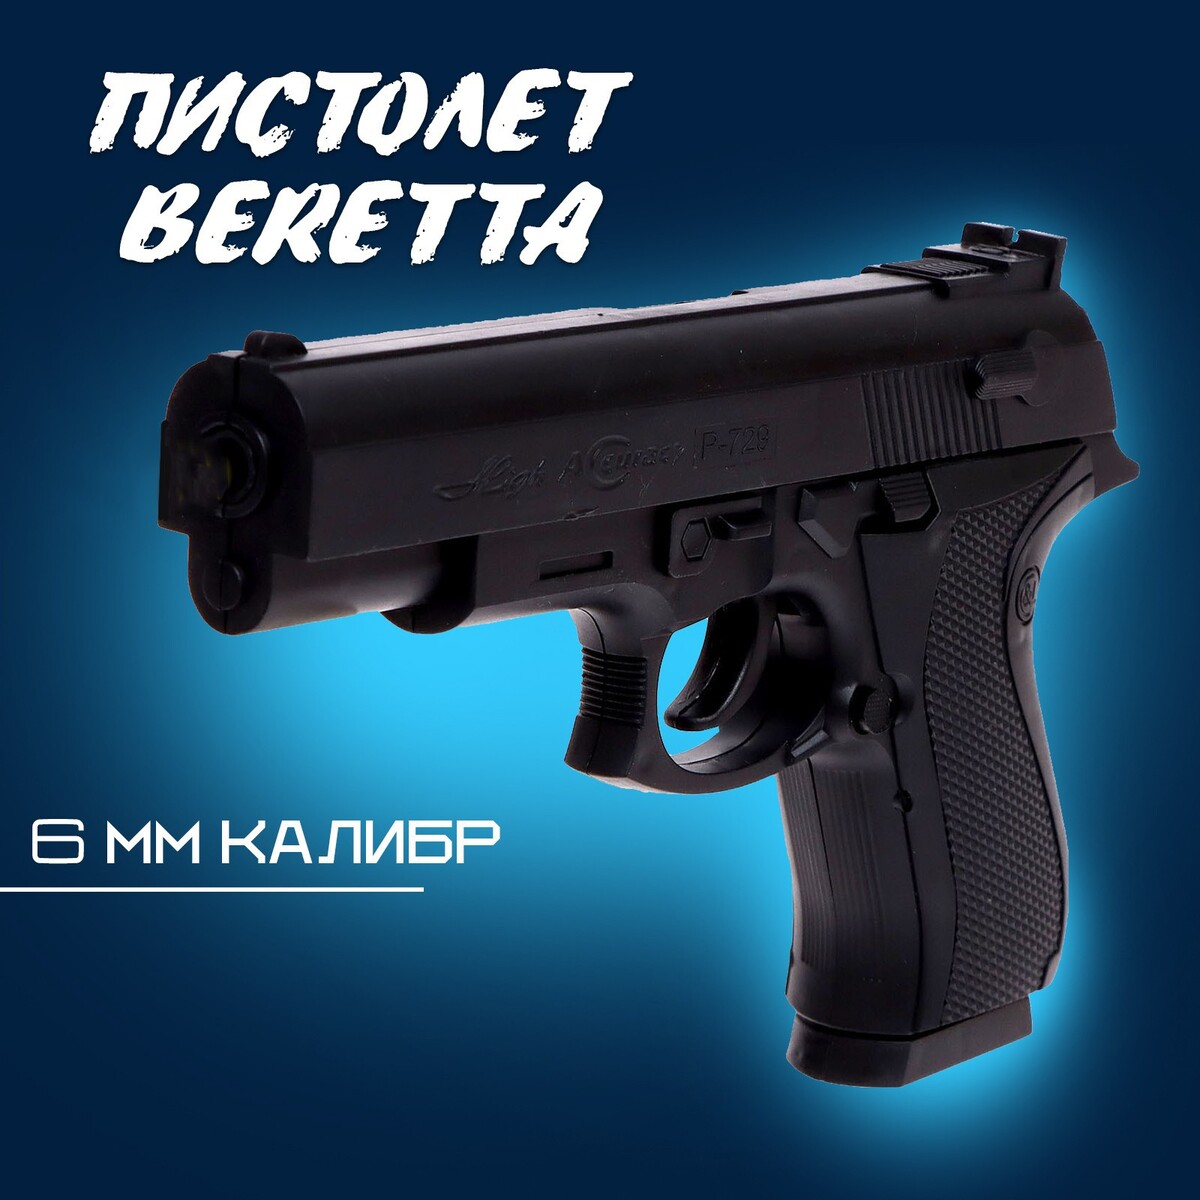 Пистолет beretta, стреляет пульками 6 мм (в комплект не входят) набор с пистолетом мишенями и пульками target line santa fe